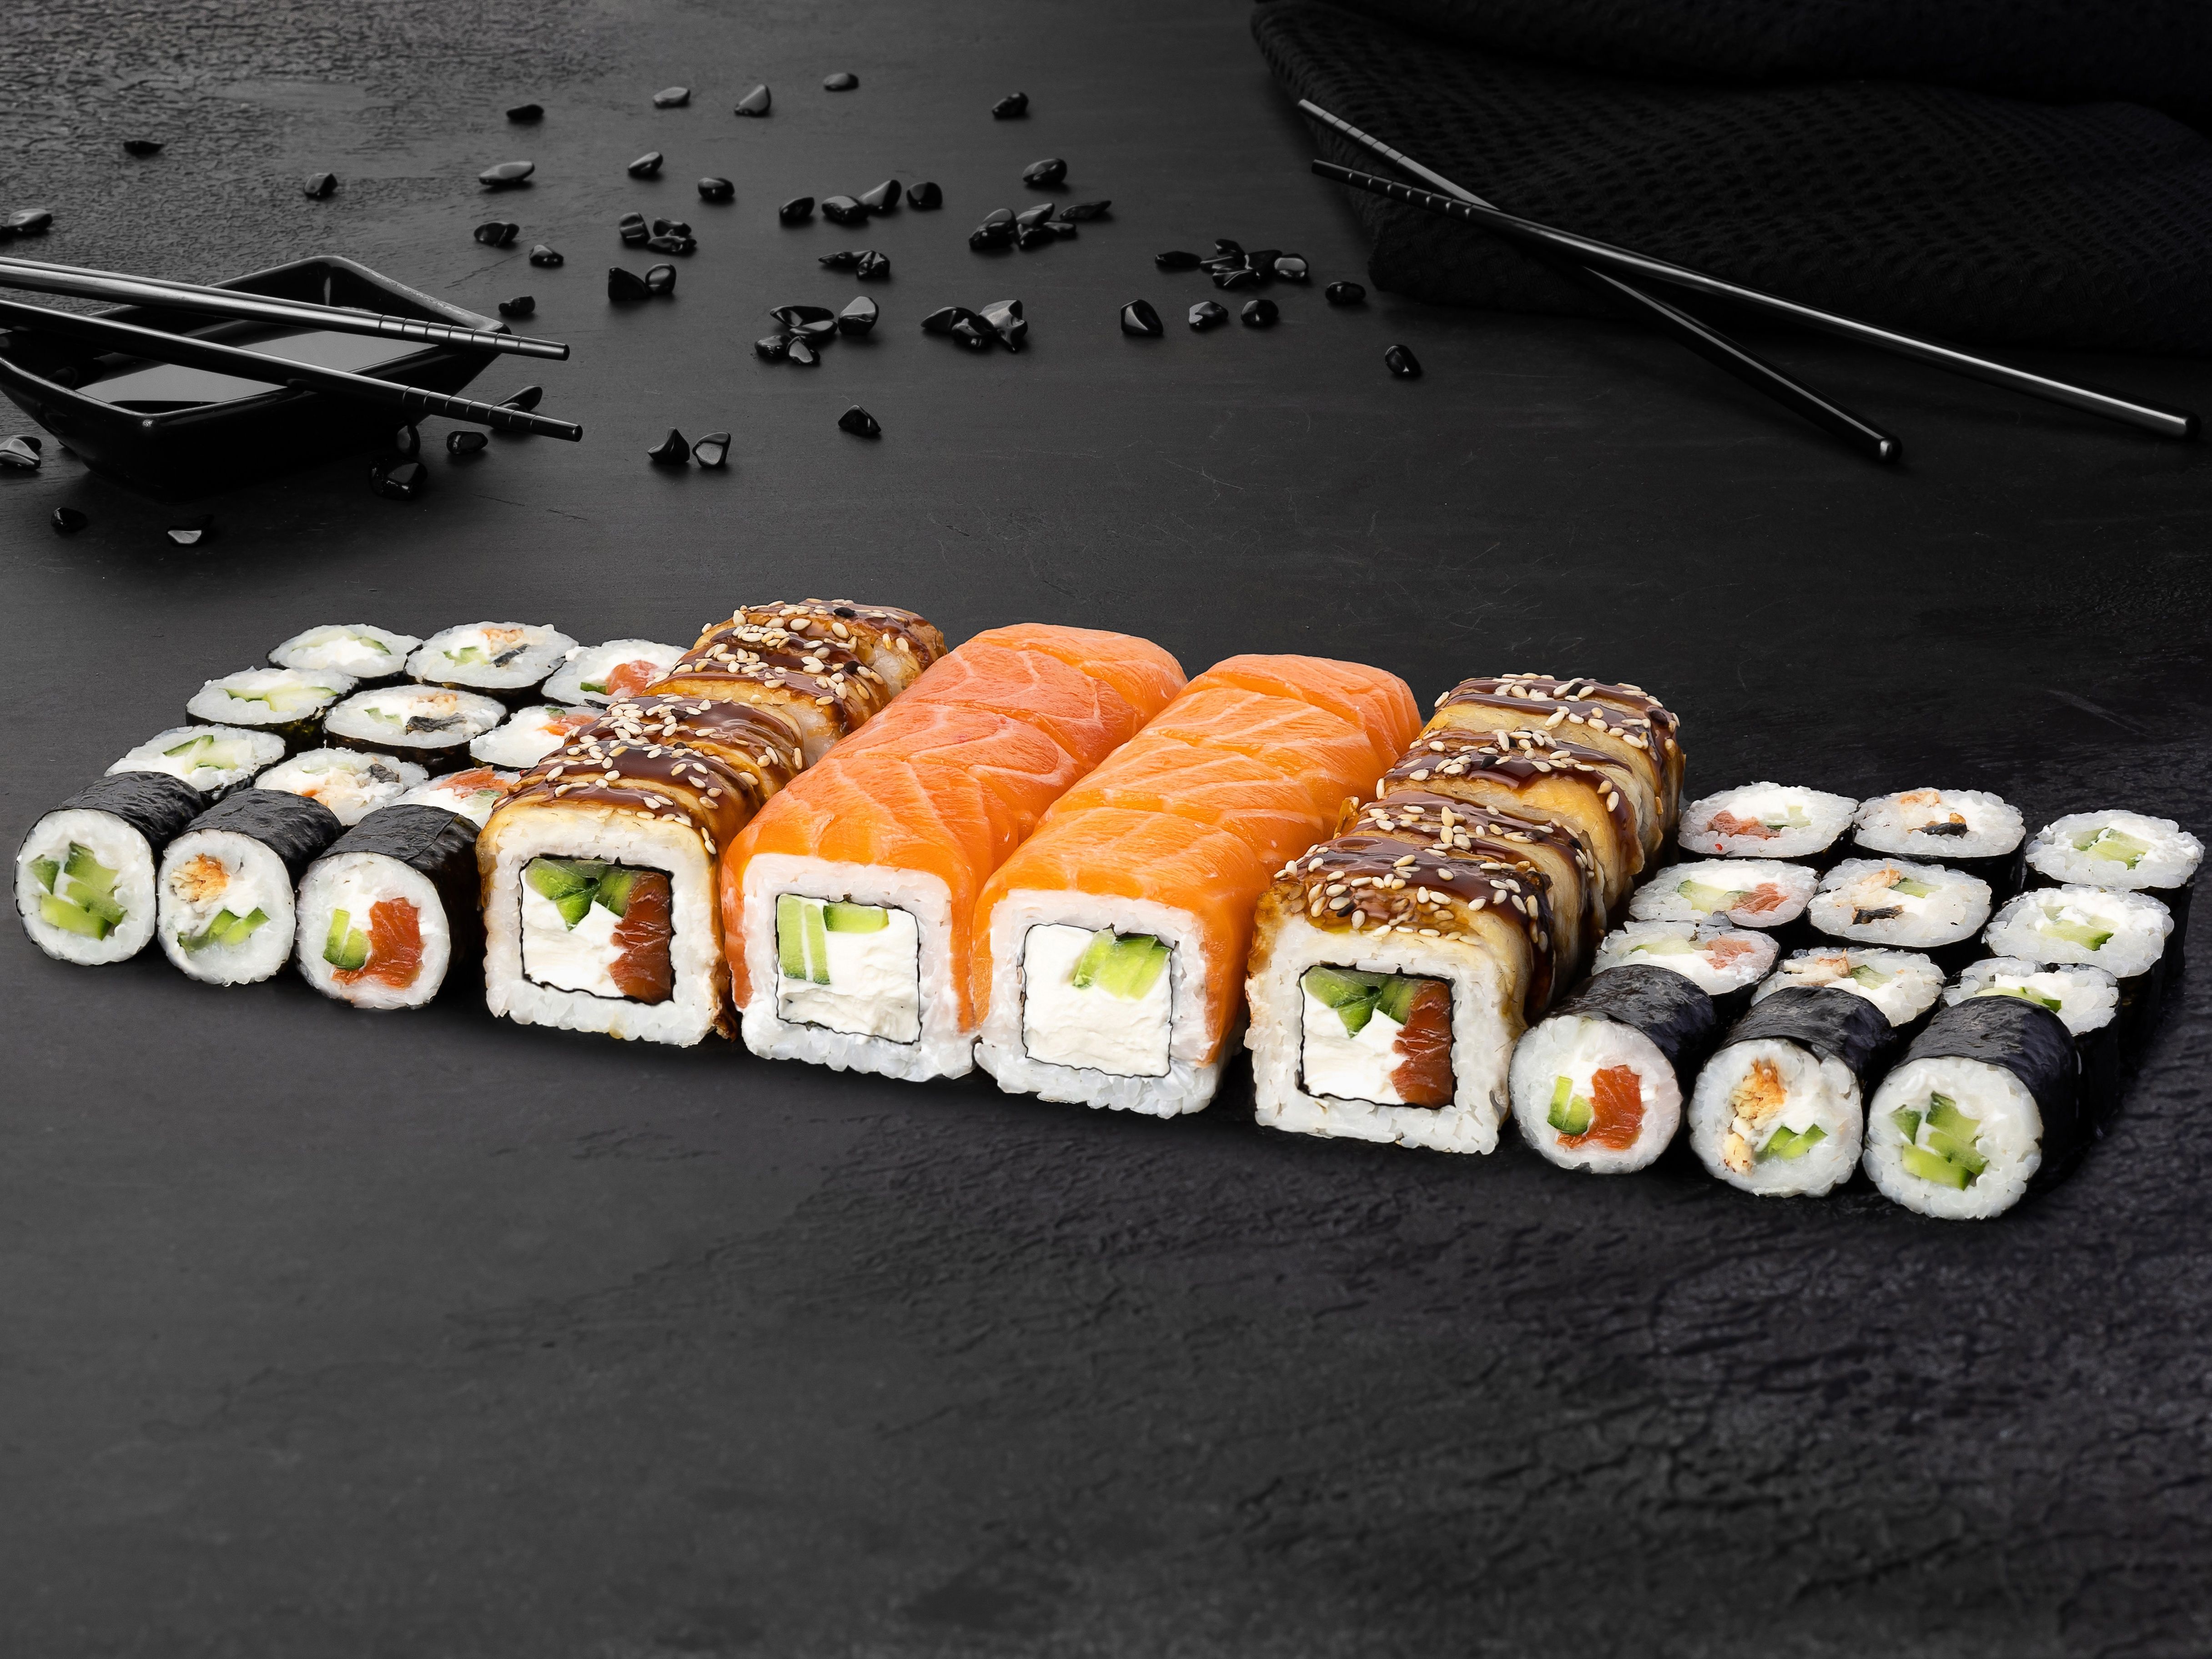 Заказать набор суши с доставкой в спб фото 114